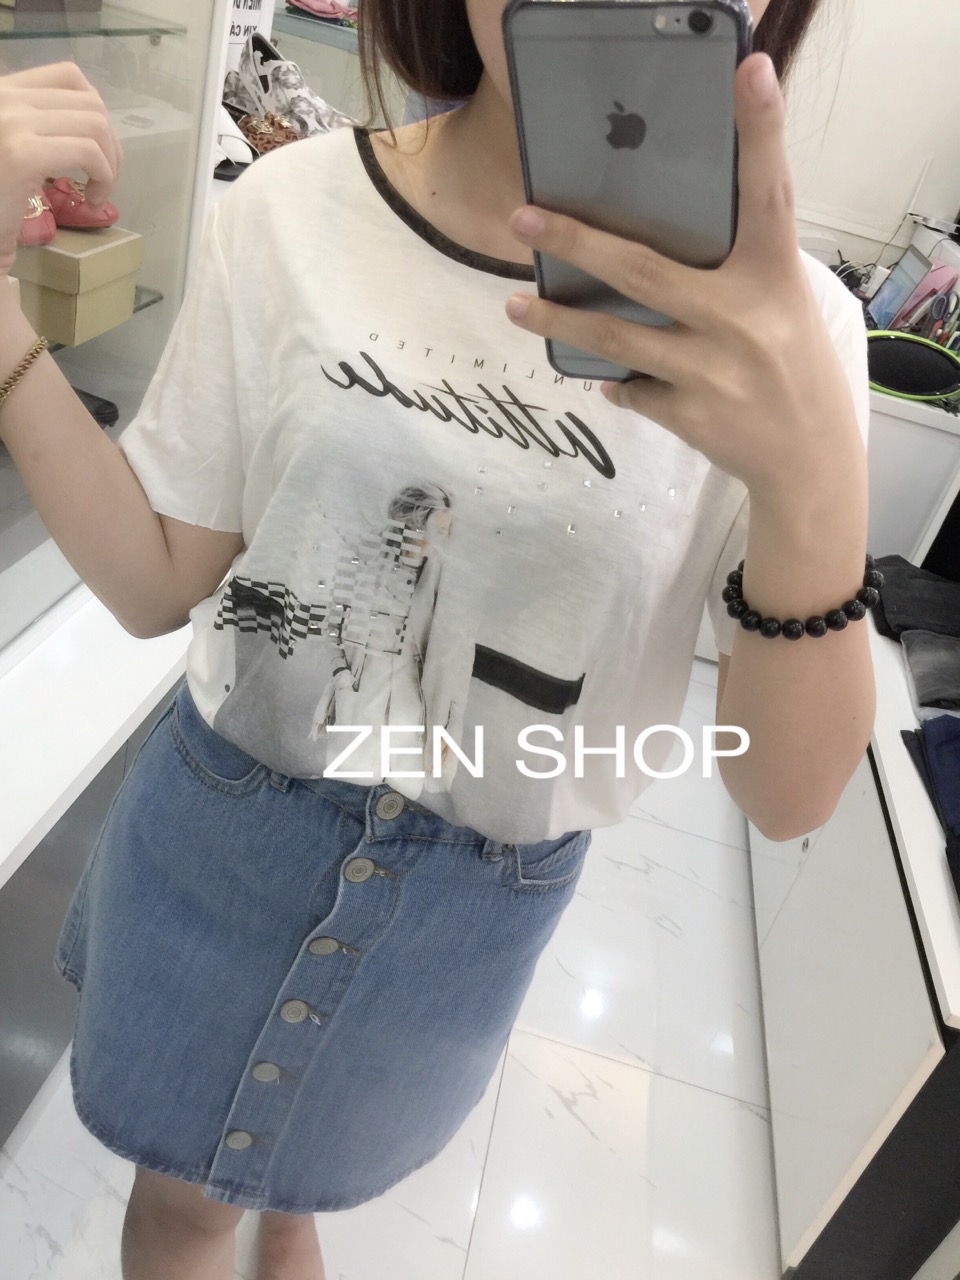 Zen Shop chuyên các mặt hàng thời trang chính hãng